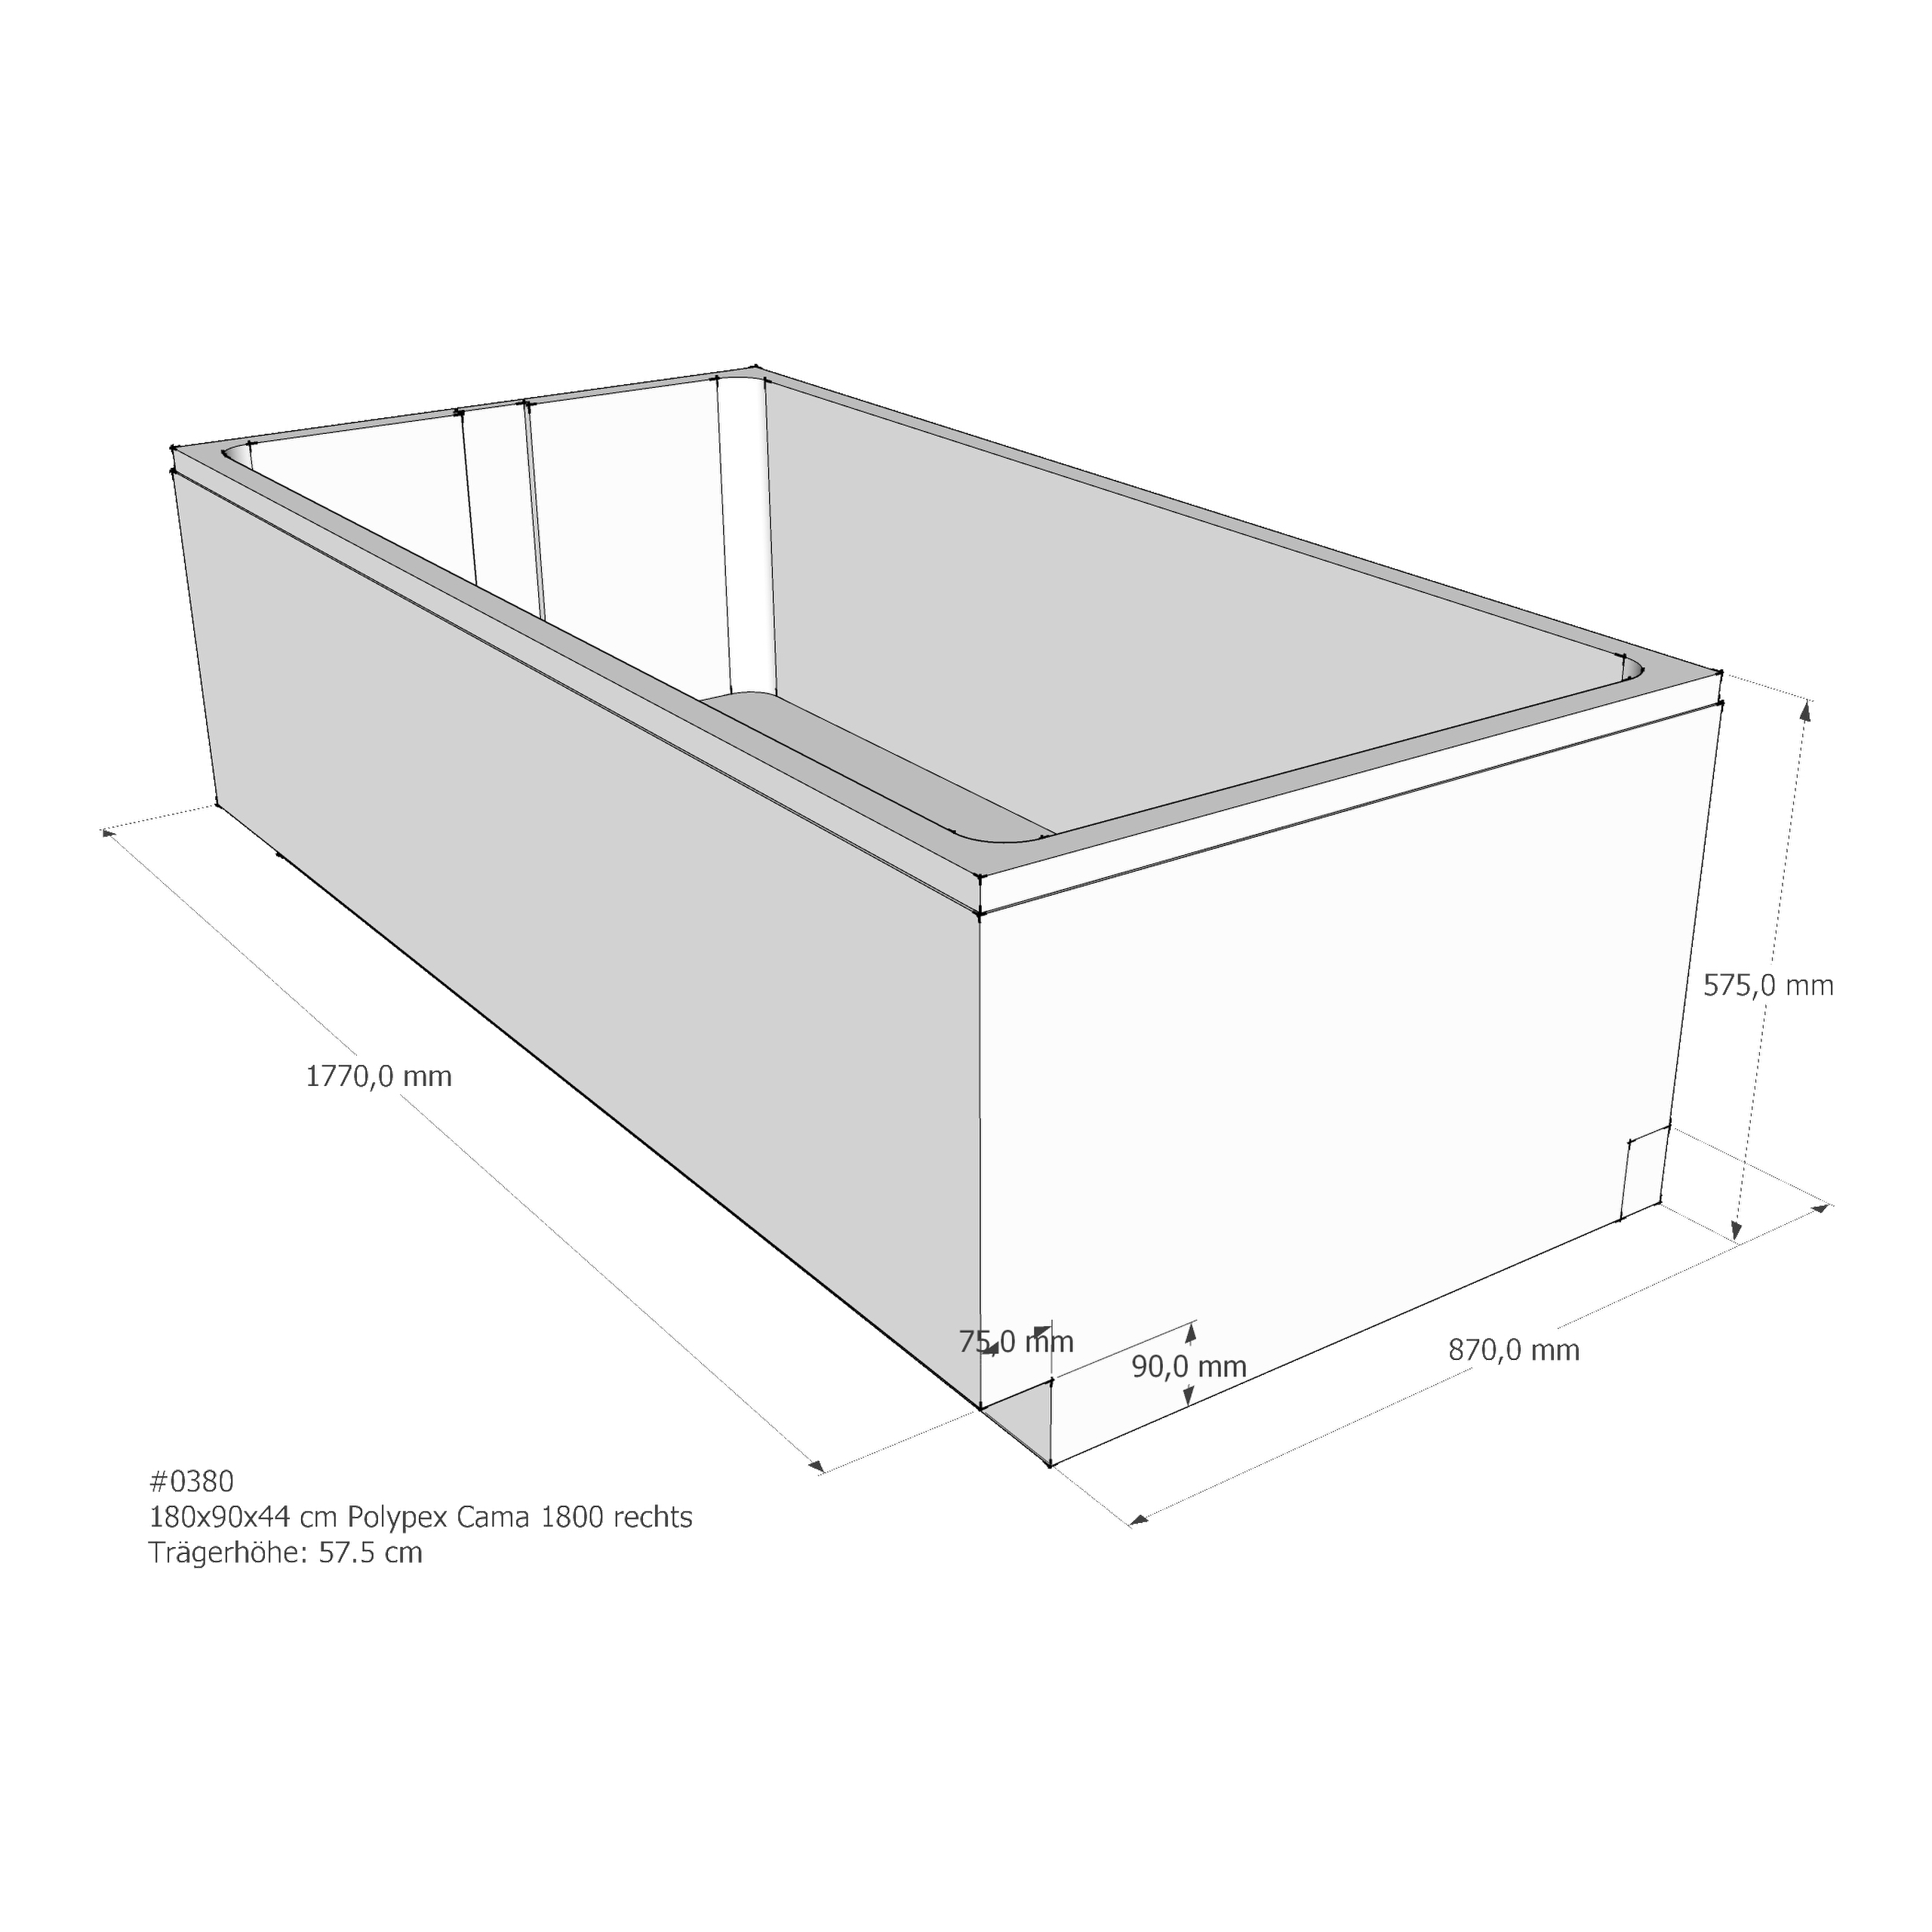 Badewannenträger für Polypex Cama 1800 rechts 180 × 90 × 44 cm